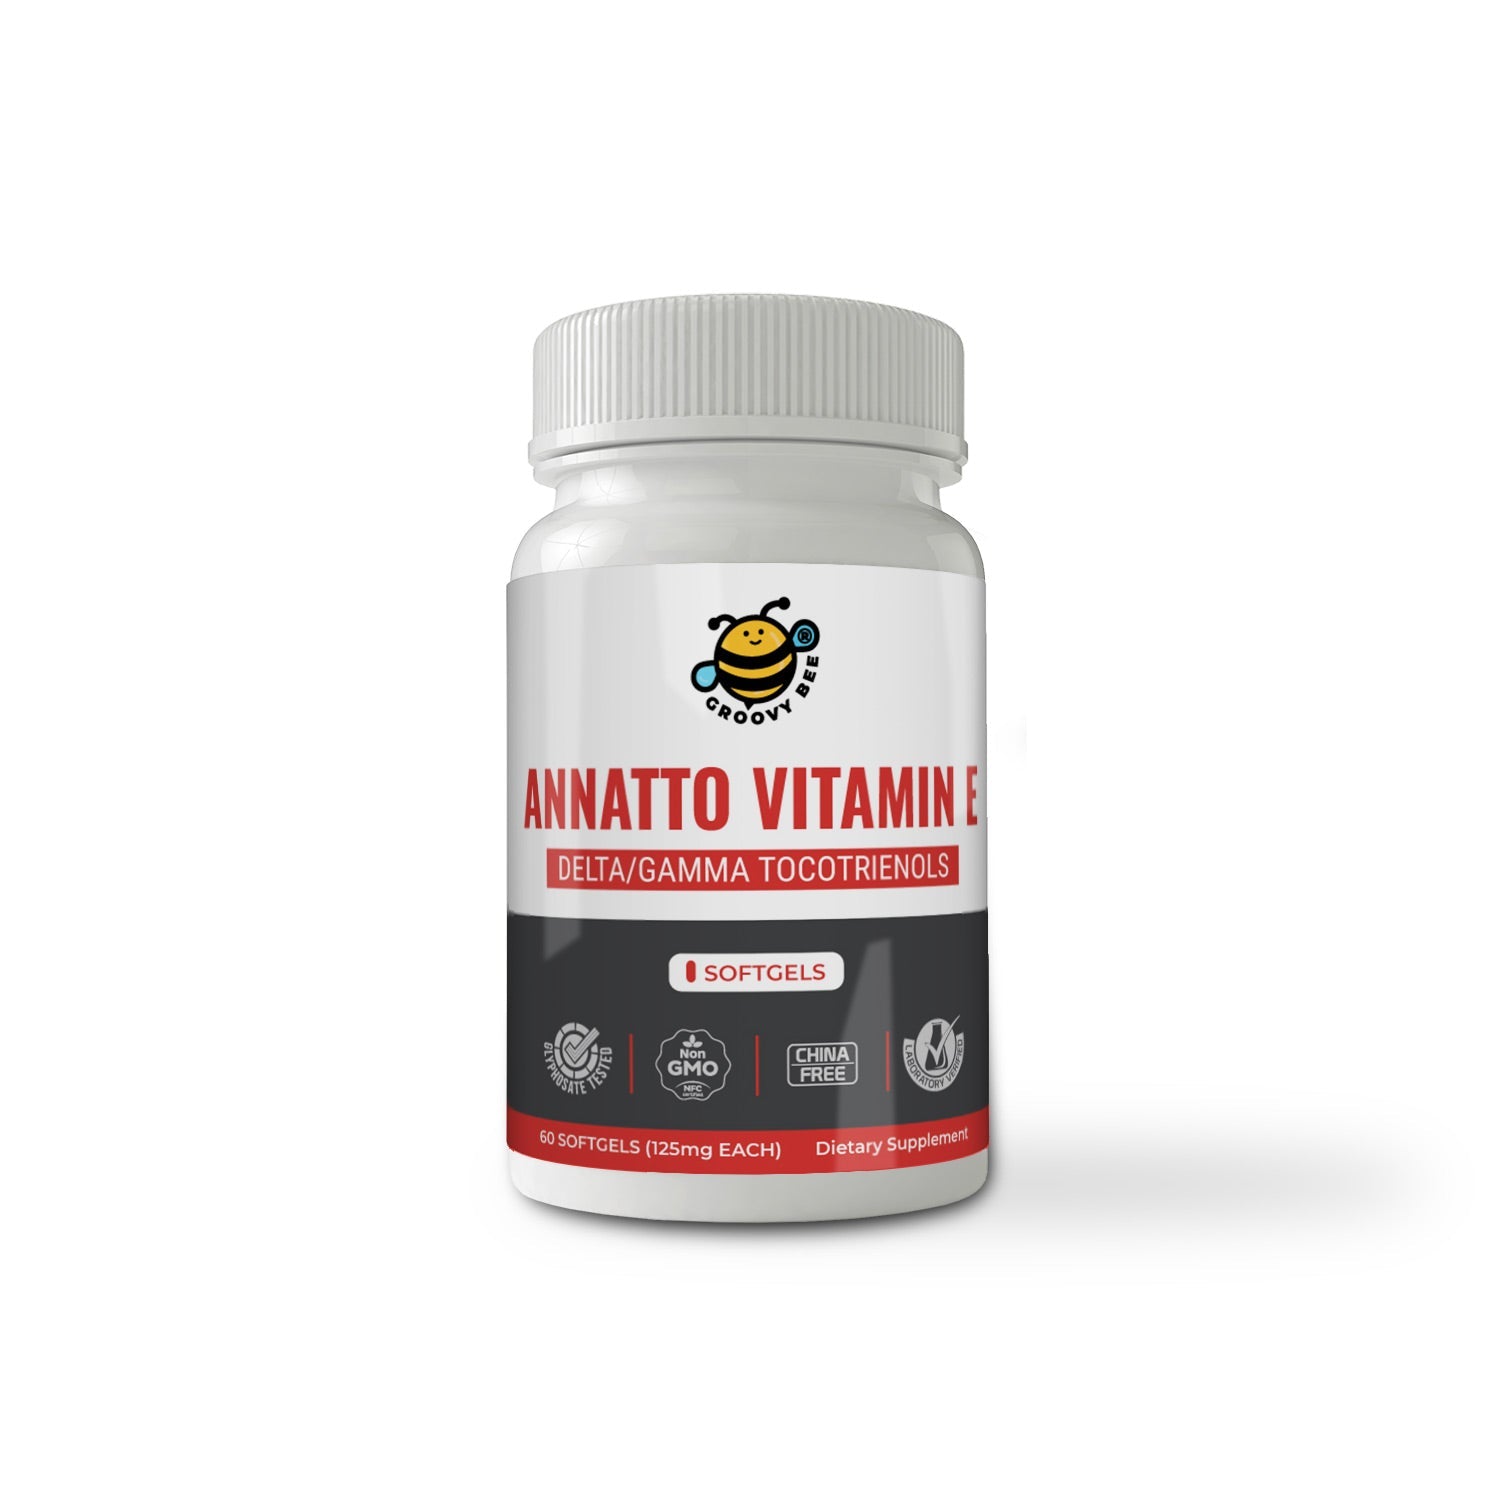 Annatto Vitamin E Delta/Gamma Tocotrienols 125mg 60 Softgels